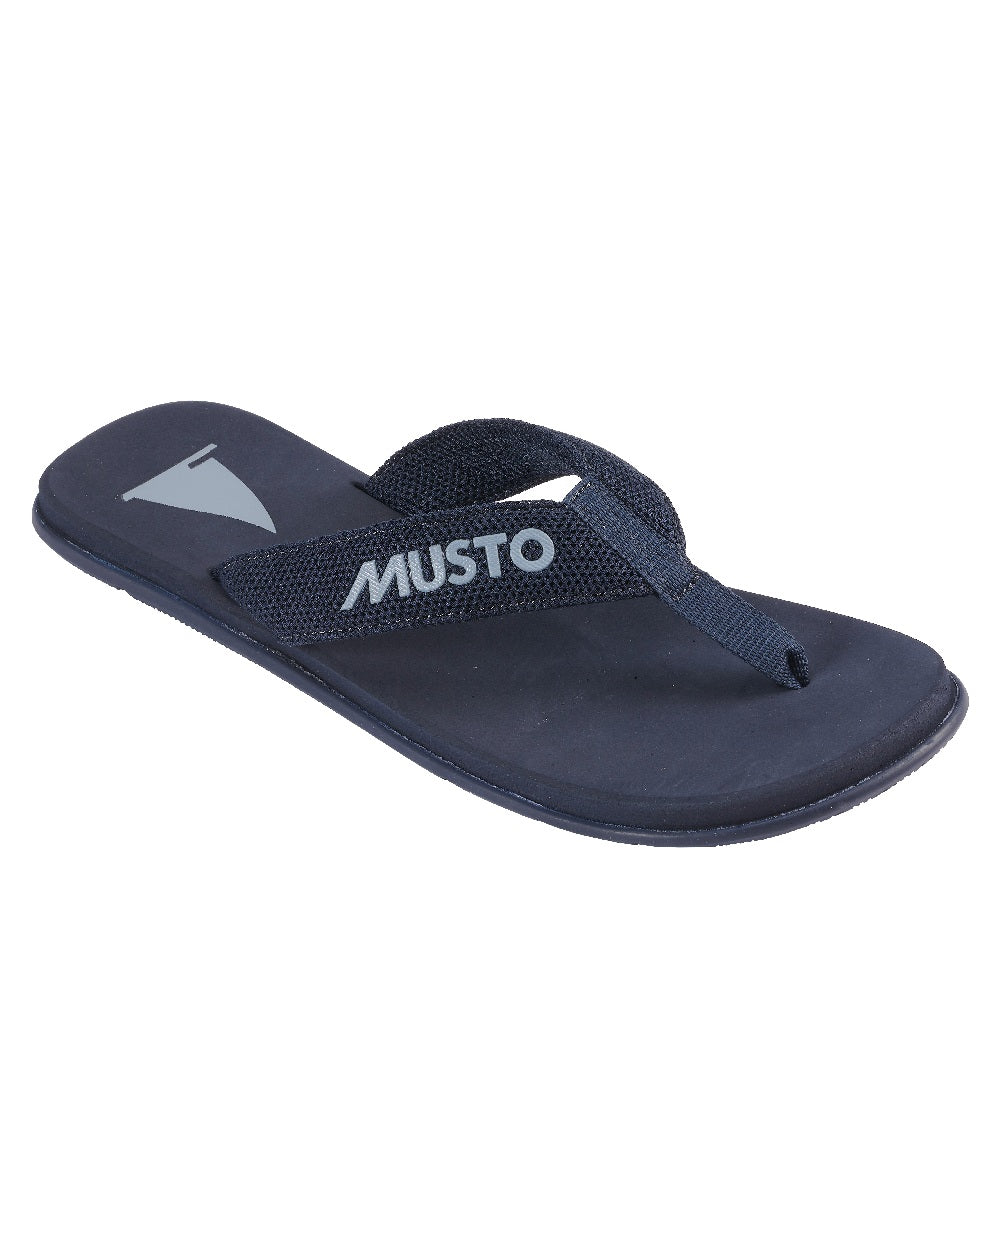 Musto Nautic Sandal in True Navy Dark Sapphire 